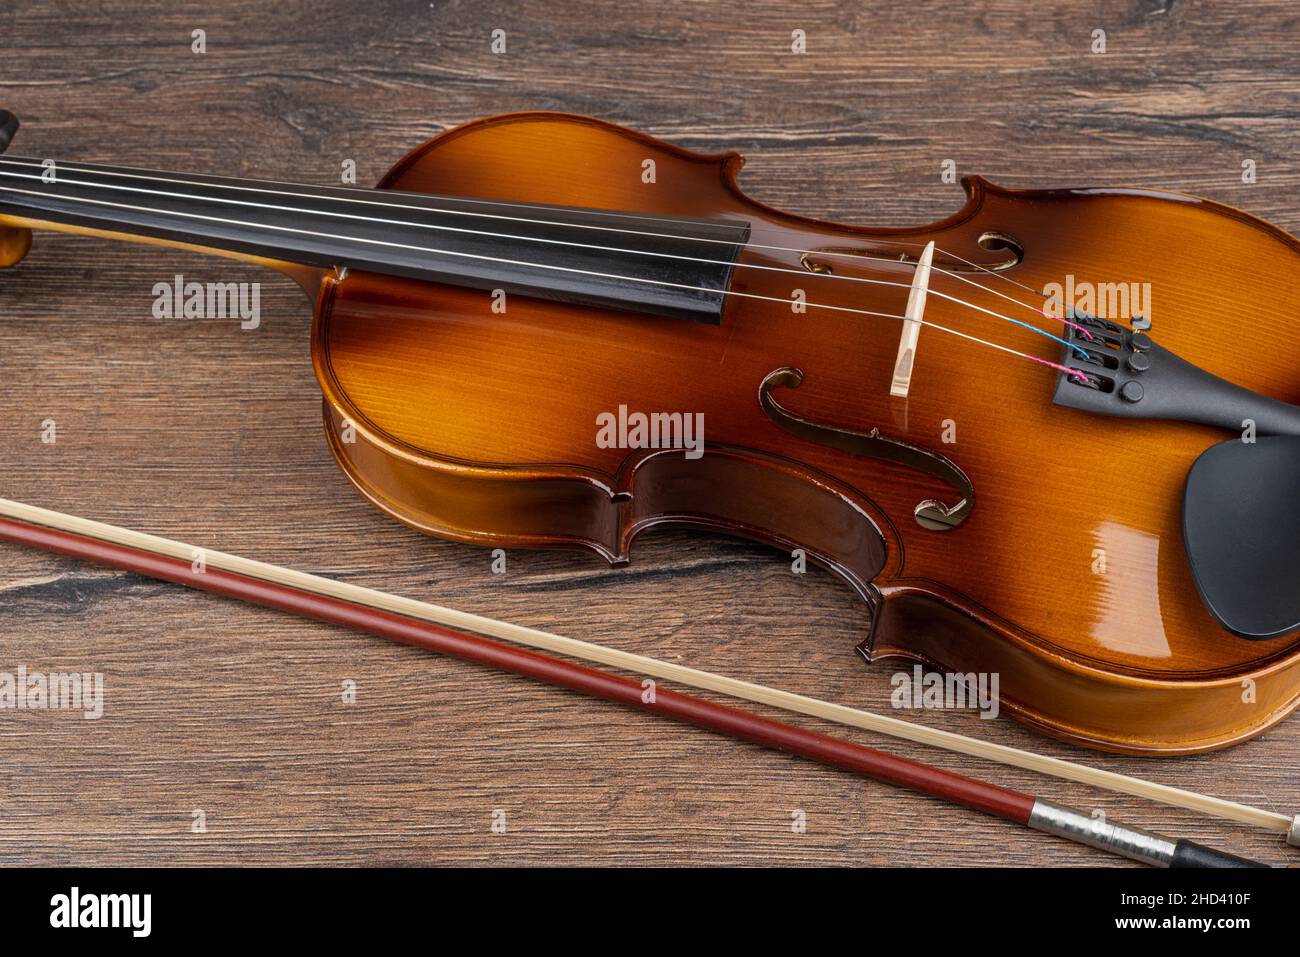 Teil einer Geige auf einem hölzernen Hintergrund mit einem Bogen.  Speicherplatz kopieren Stockfotografie - Alamy